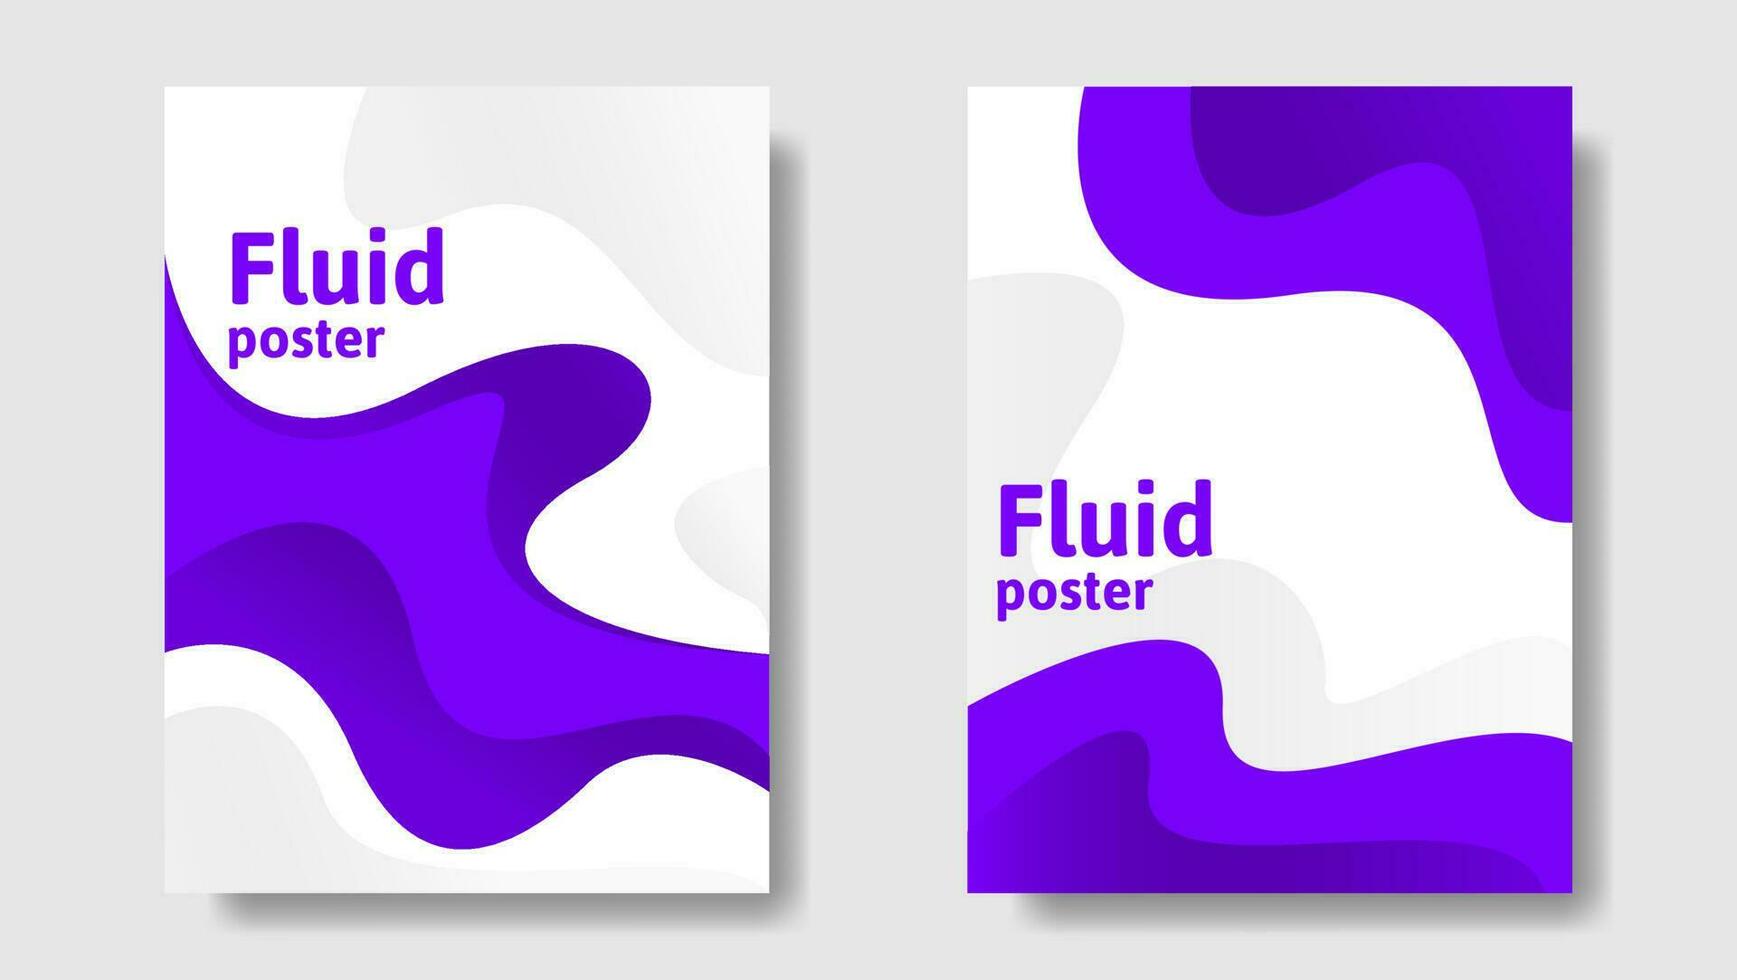 ensemble de couverture fluide violet. affiche design tendance avec des formes fluides abstraites de couleur violette vecteur